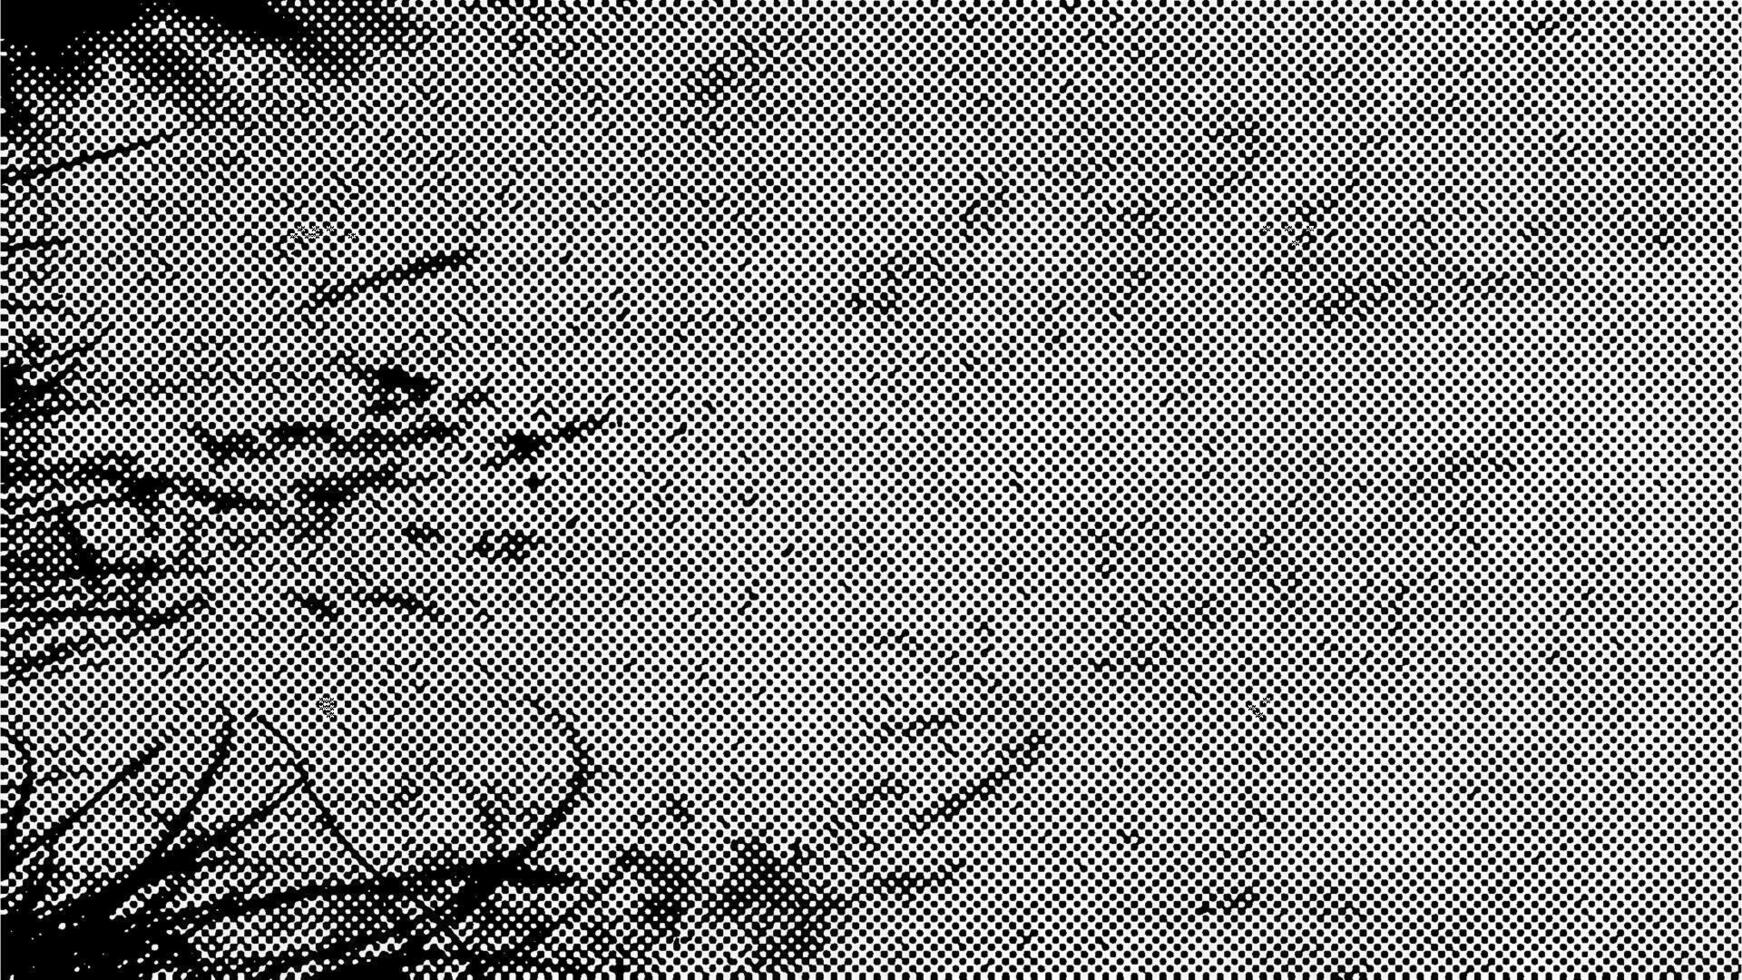 Clásico trama de semitonos antecedentes con natural superficie y césped sombra, dispersado negro puntos en blanco fondo. vector 16x9 ilustración.